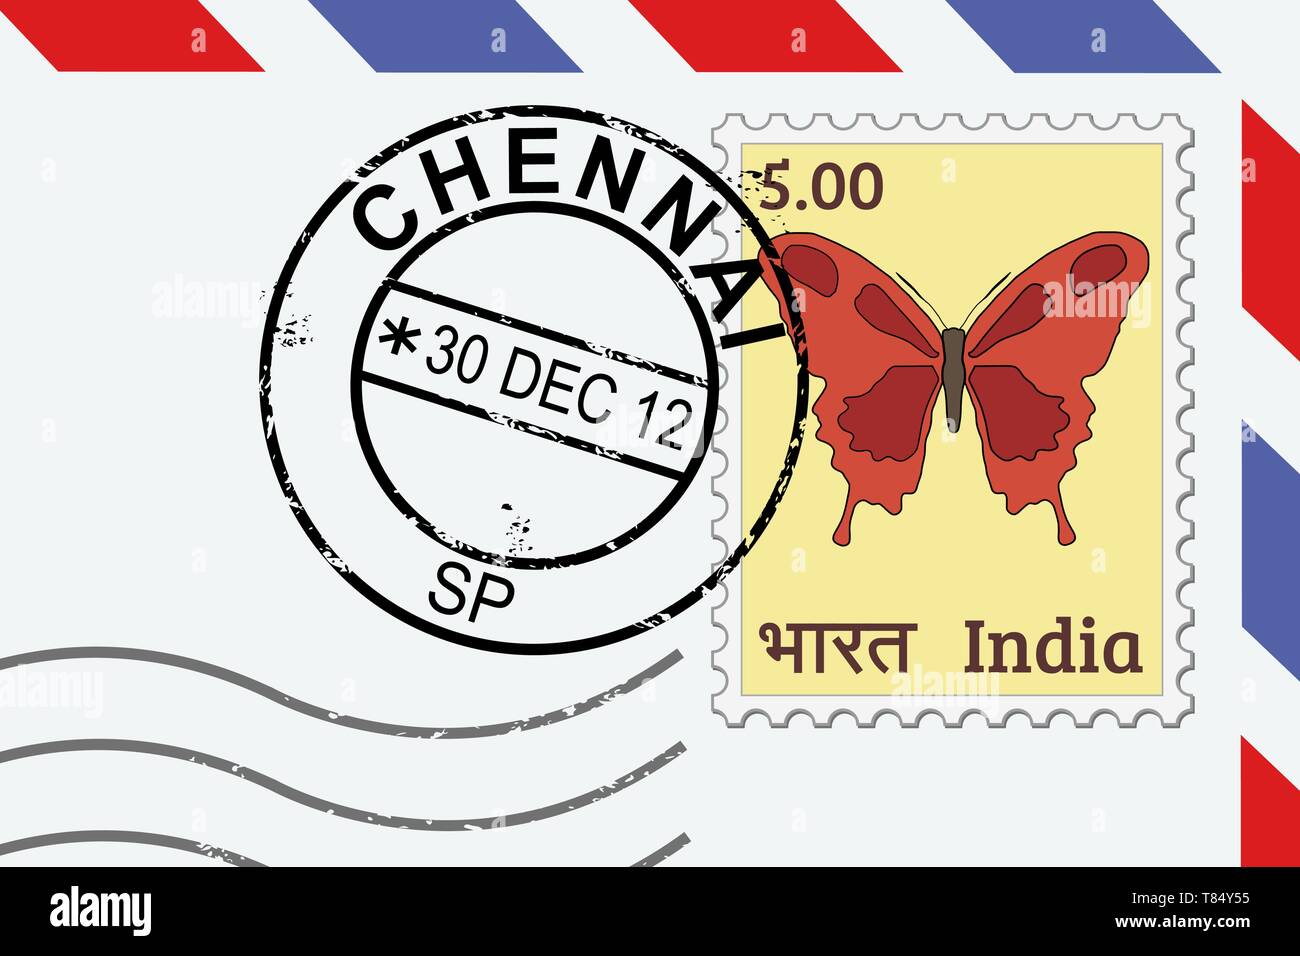 Chennai - Indien post Briefmarke Briefmarke auf Lettern. Stock Vektor